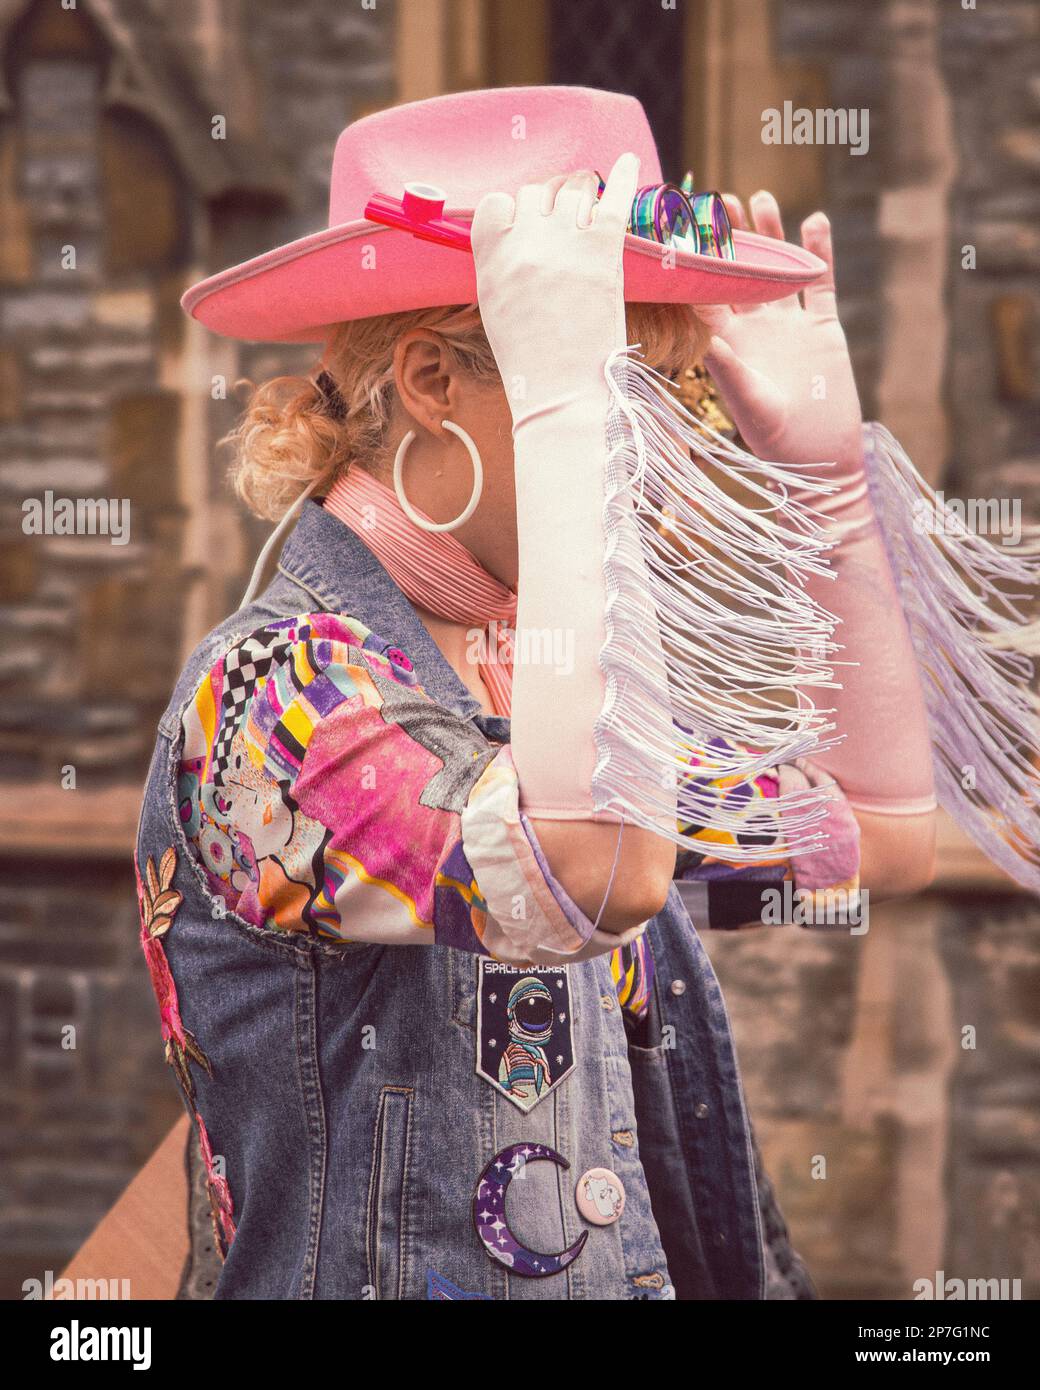 Una vaquera con un sombrero de vaquero rosa caminando por una calle. Su cara está oculta por el borde de sus guantes ajusta su sombrero Fotografía de stock - Alamy